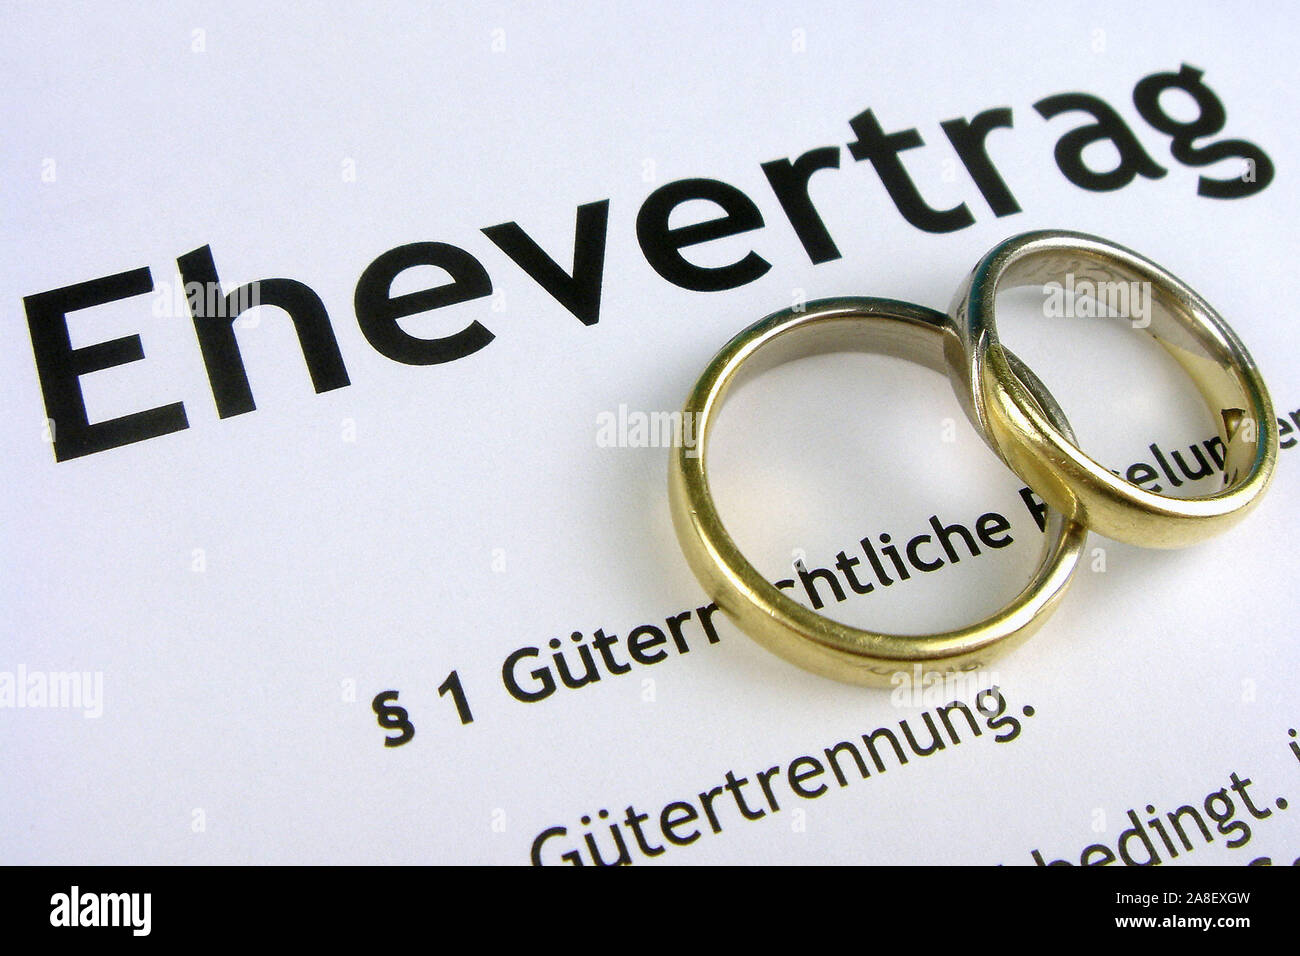 Ehevertrag, Eheringe, Stock Photo